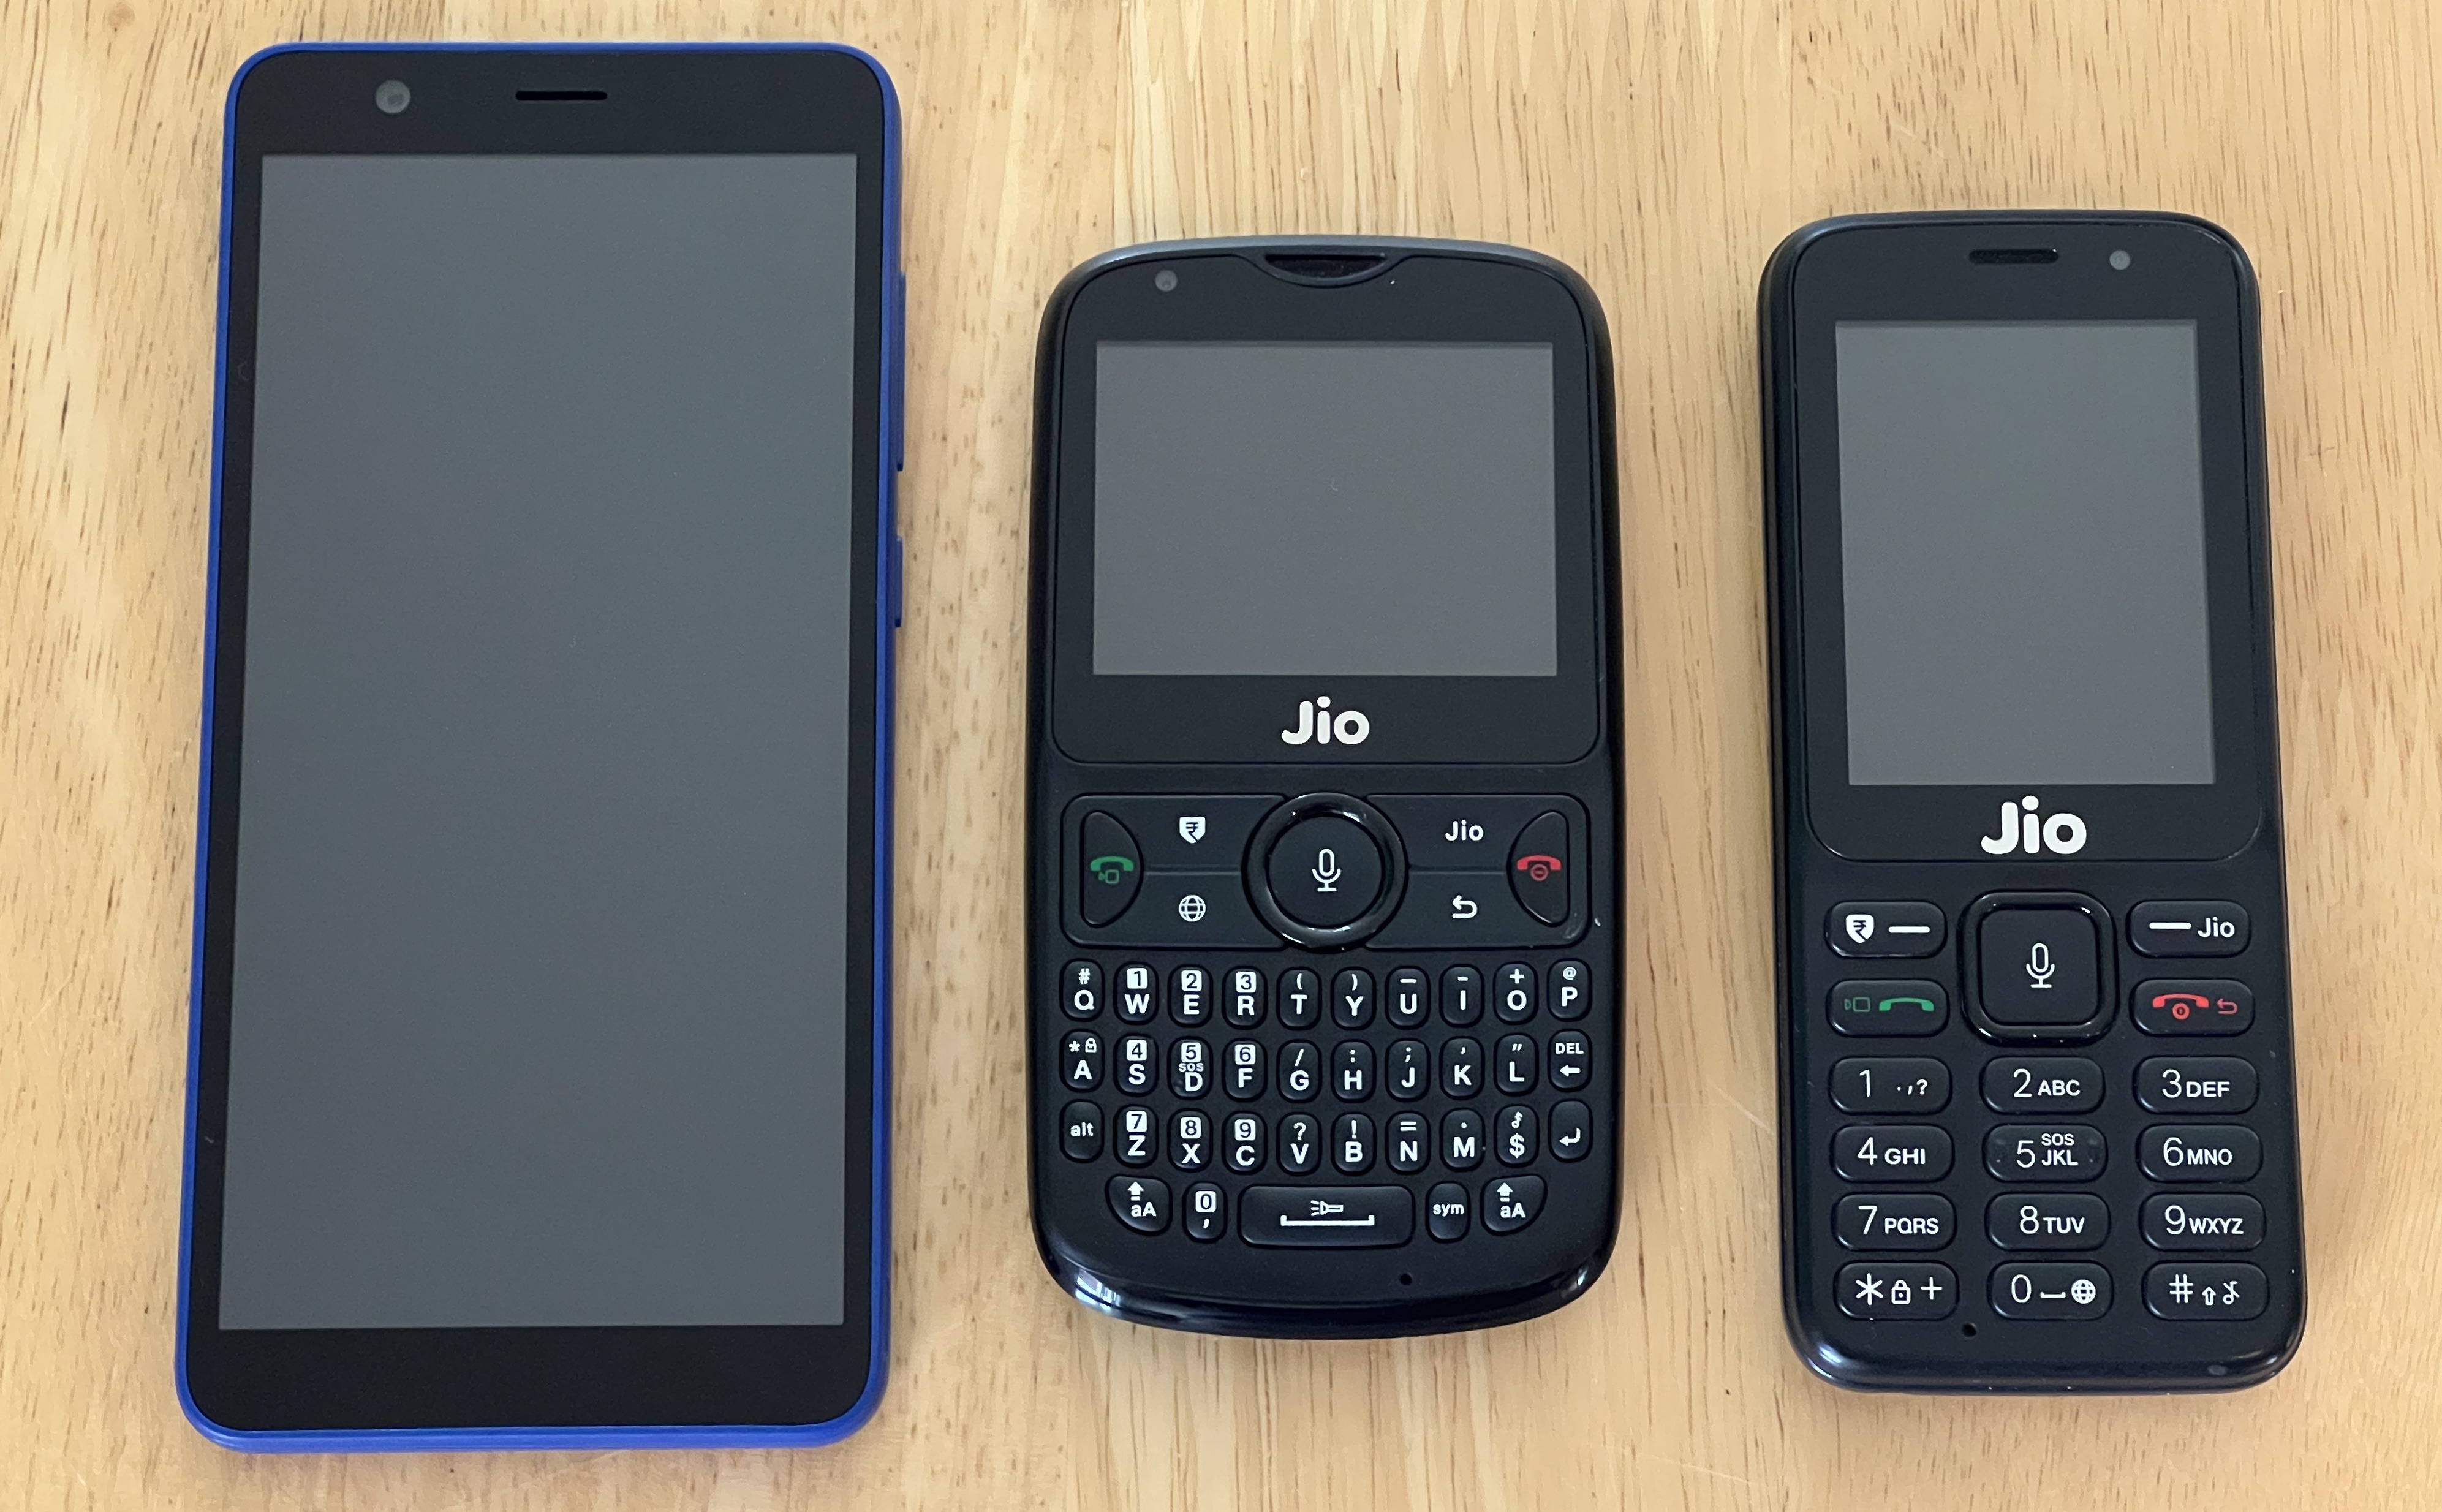 JioPhone Next (LS1542QWN), JioPhone 2 (F300B), and JioPhone (F90M)